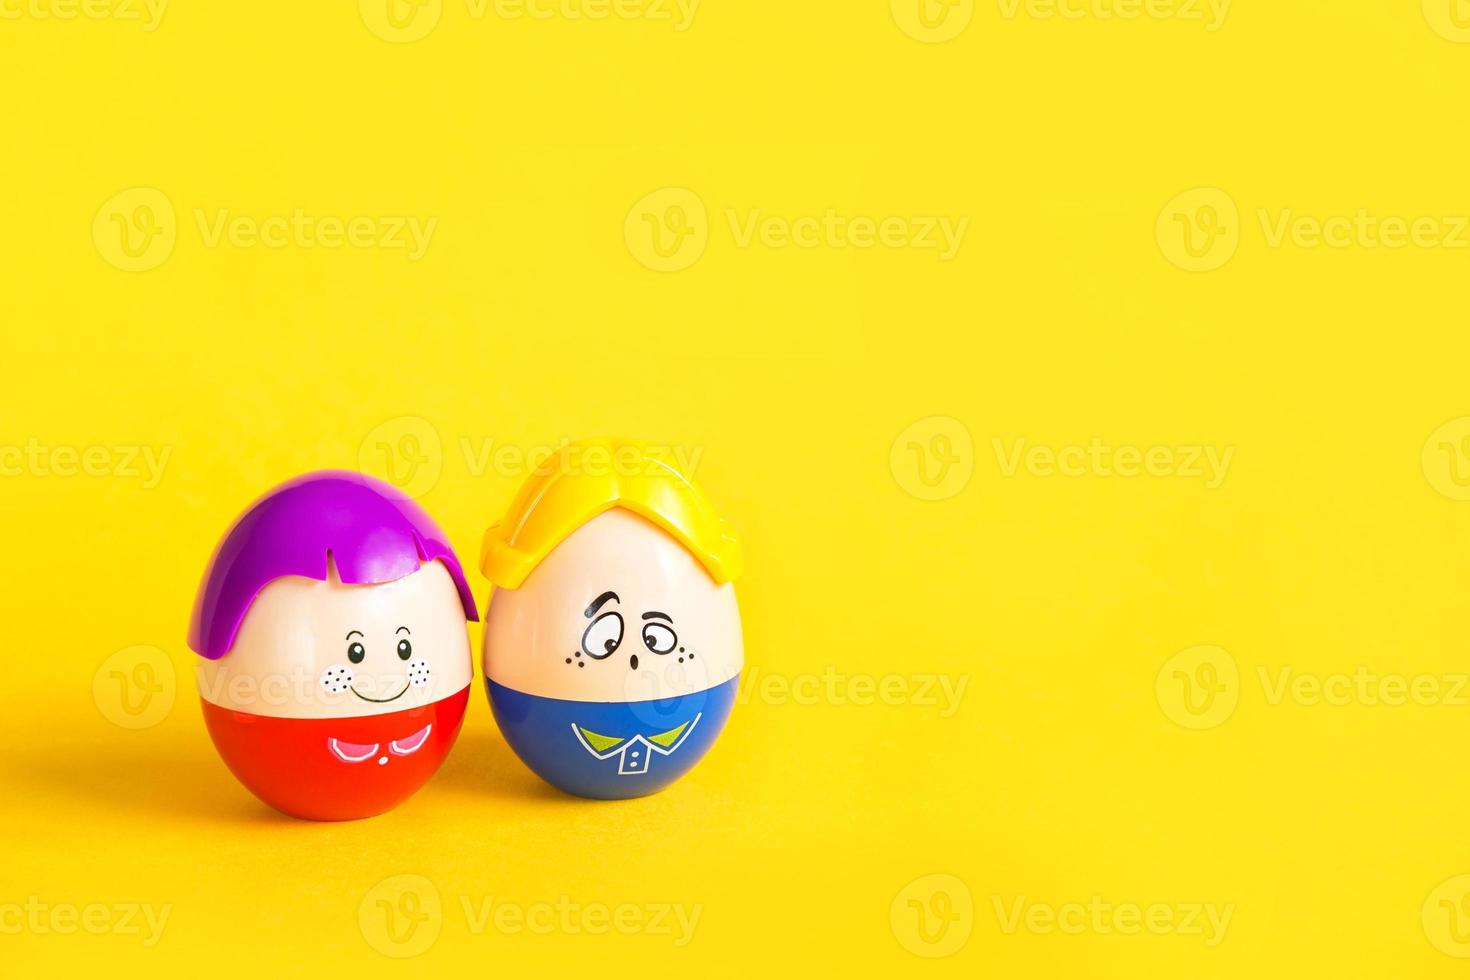 Zwei lustige Eier Junge und Mädchen mit Gesichtern auf gelbem Hintergrund - Ostern, Frühling. Kinderspielzeug - ein Symbol für ein paar Männer und Frauen, Liebe, Familie. Platz kopieren foto